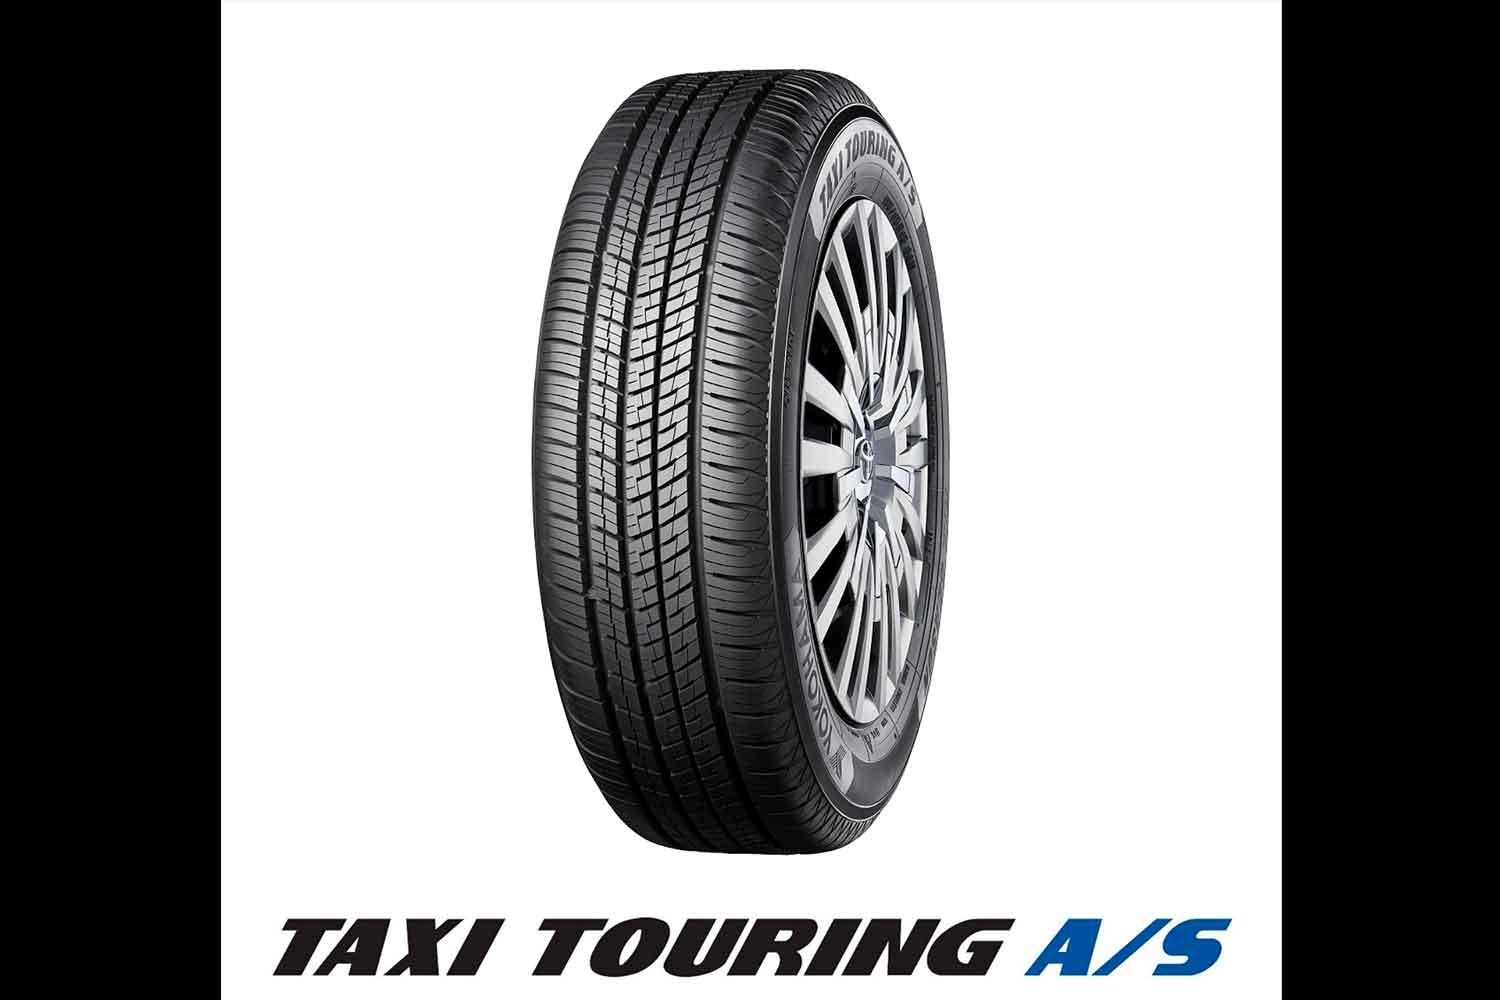 ヨコハマタイヤのタクシー専用オールシーズンタイヤ「TAXI TOURING A/S」 〜 画像2